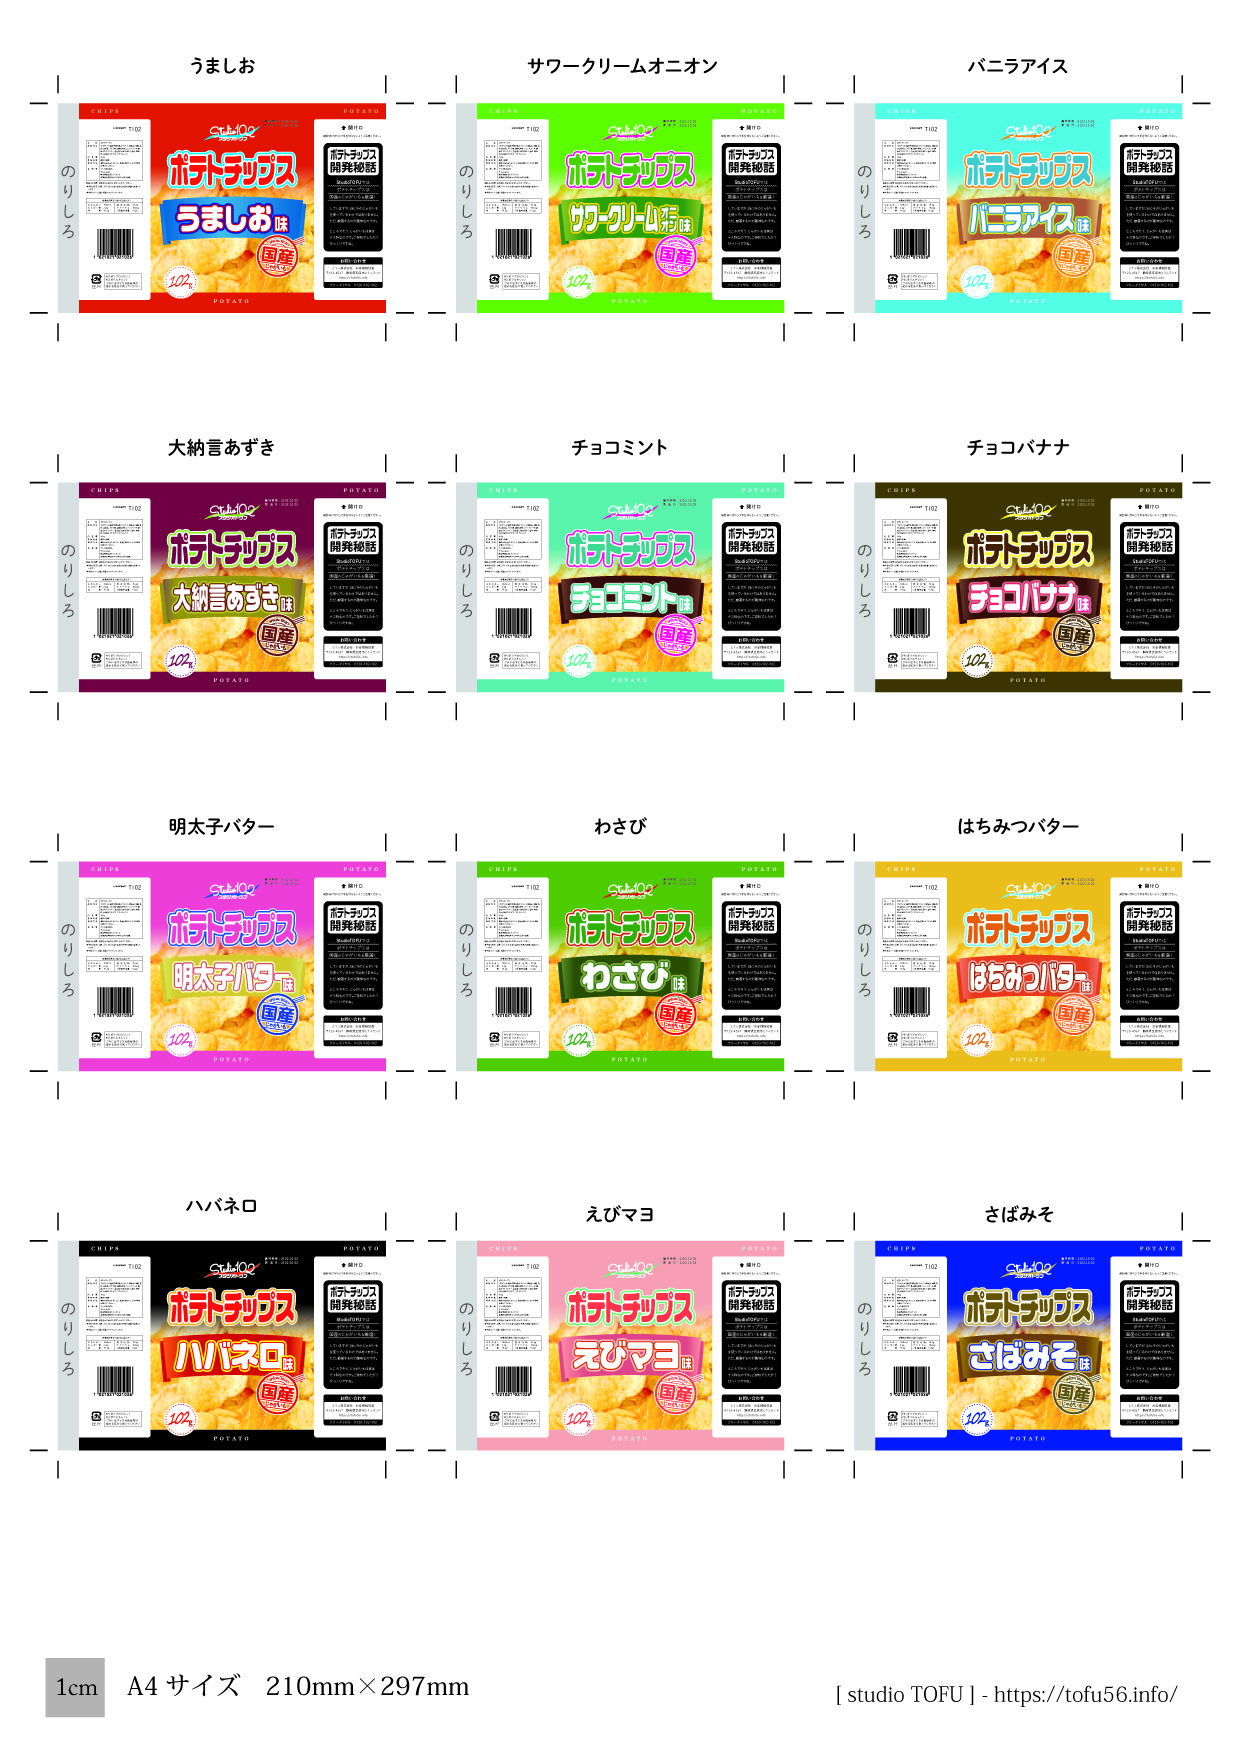 ミニチュアポテトチップスを作ろう 第二弾は 12種類の新フレーバー 素材配布 Studio Tofu